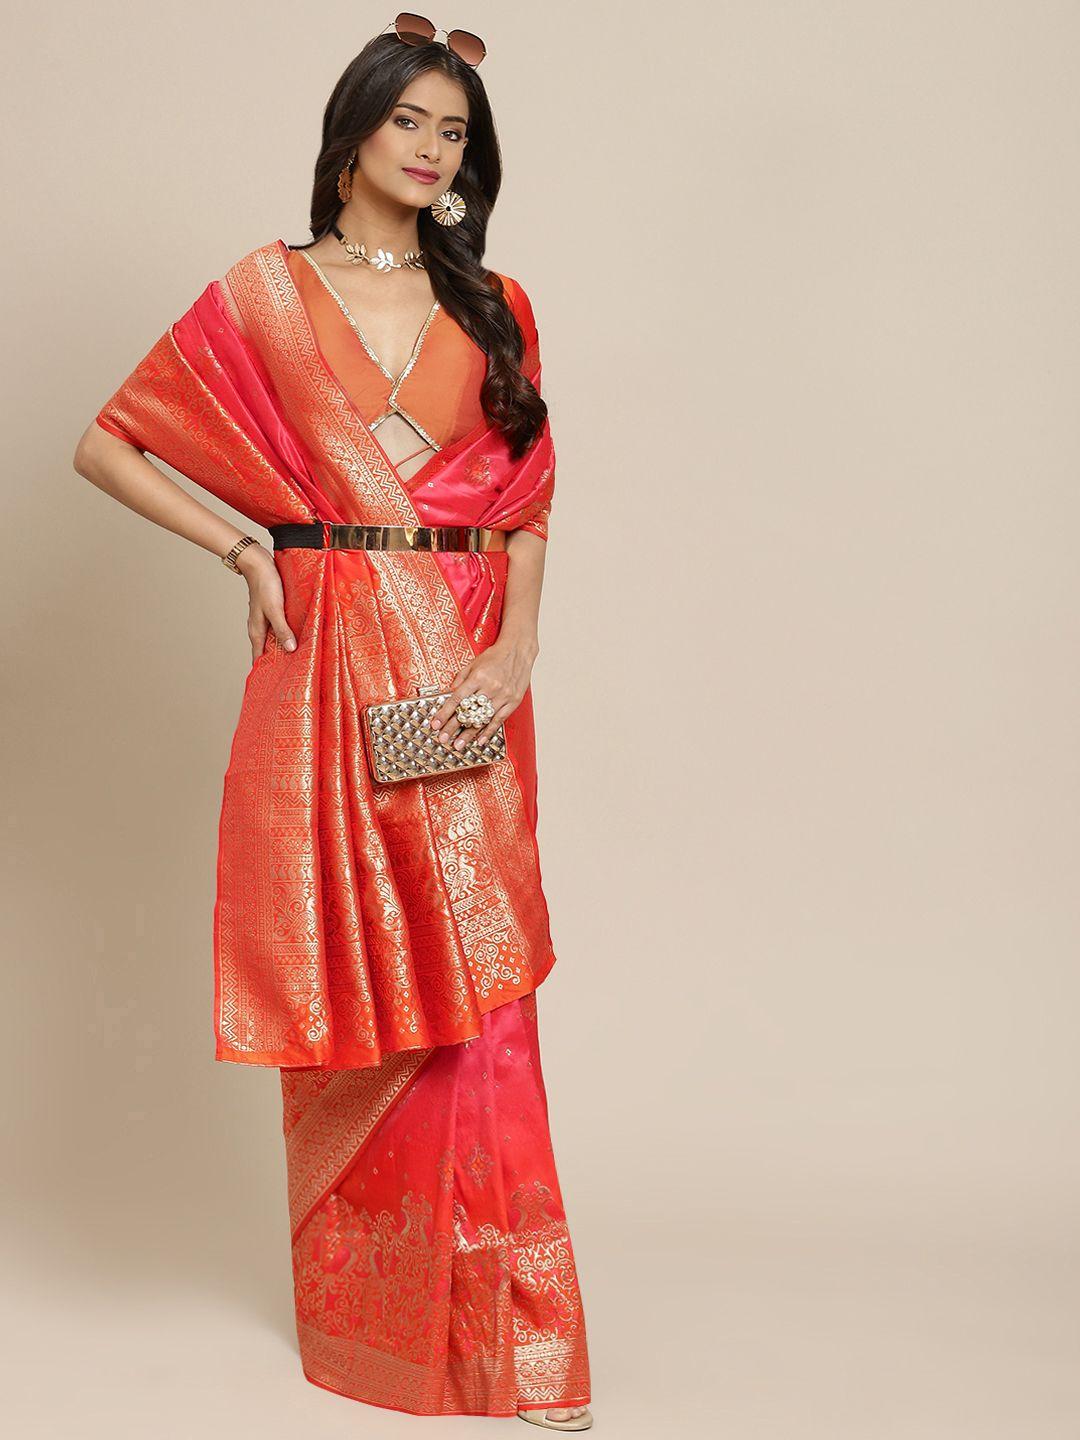 shubhvastra pink & orange ethnic motifs woven design banarasi saree